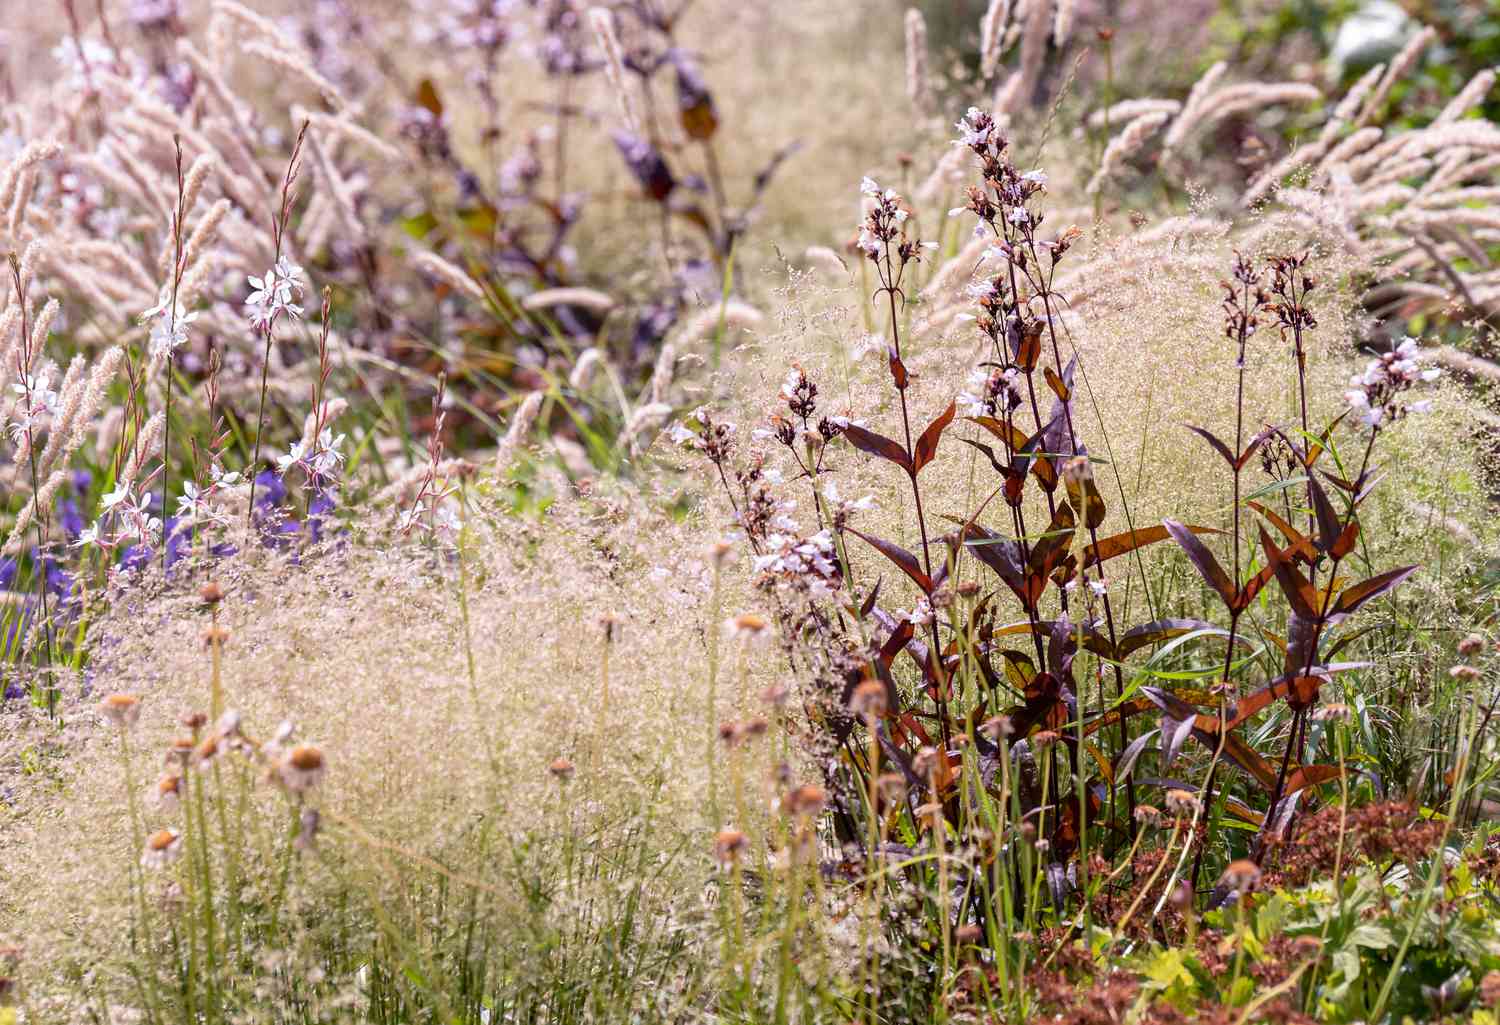 Penstemon digitalis 'Husker Red' kastanienbraun-violette Pflanzen in einem Feld